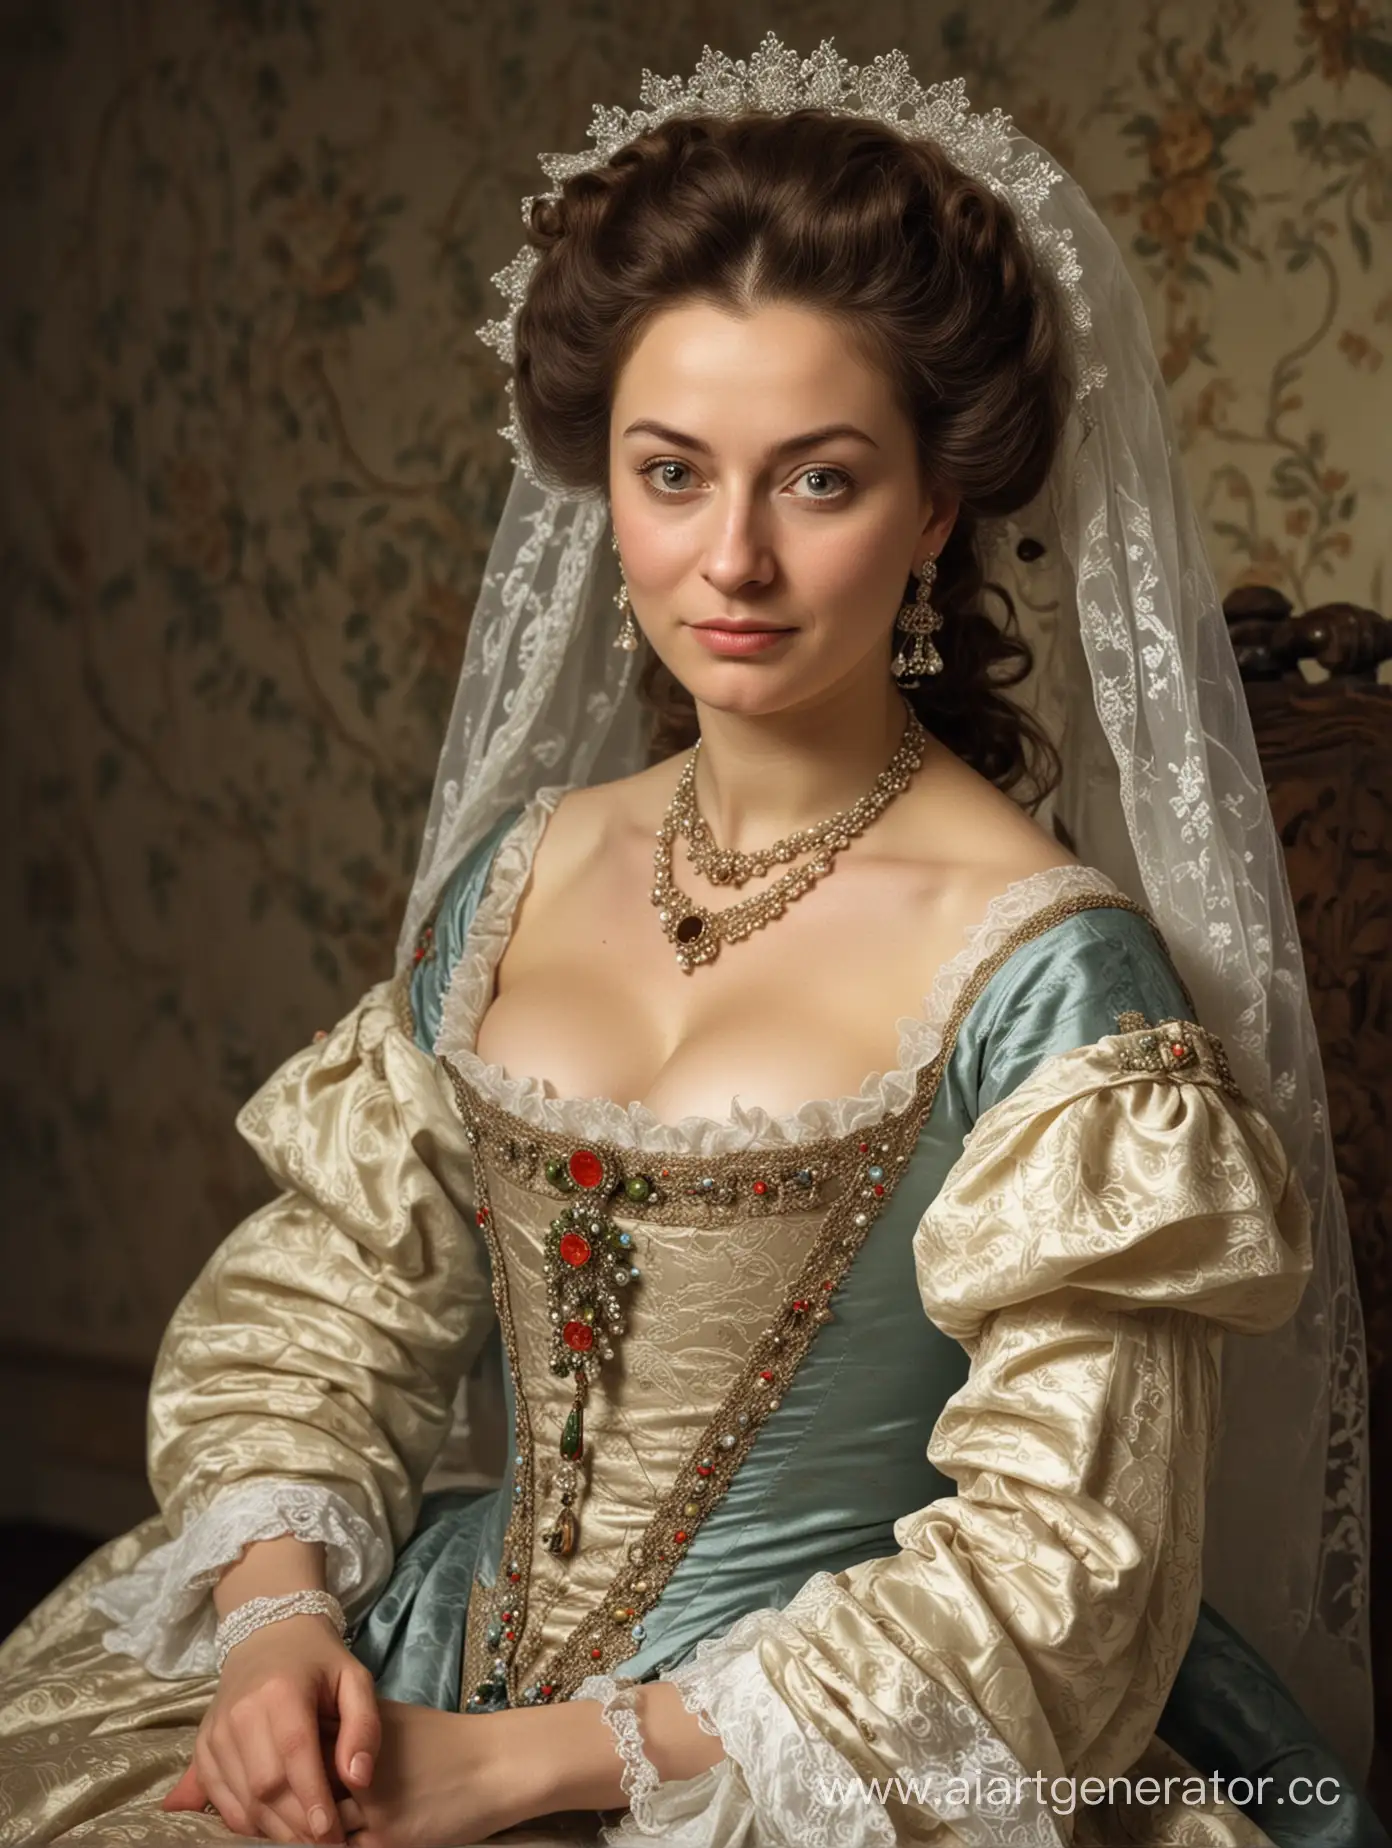 Помещица-женщина не даёт своей дочери выйти замуж за её жениха, лицо злое, обстановка неприятная, 18 век, Россия
